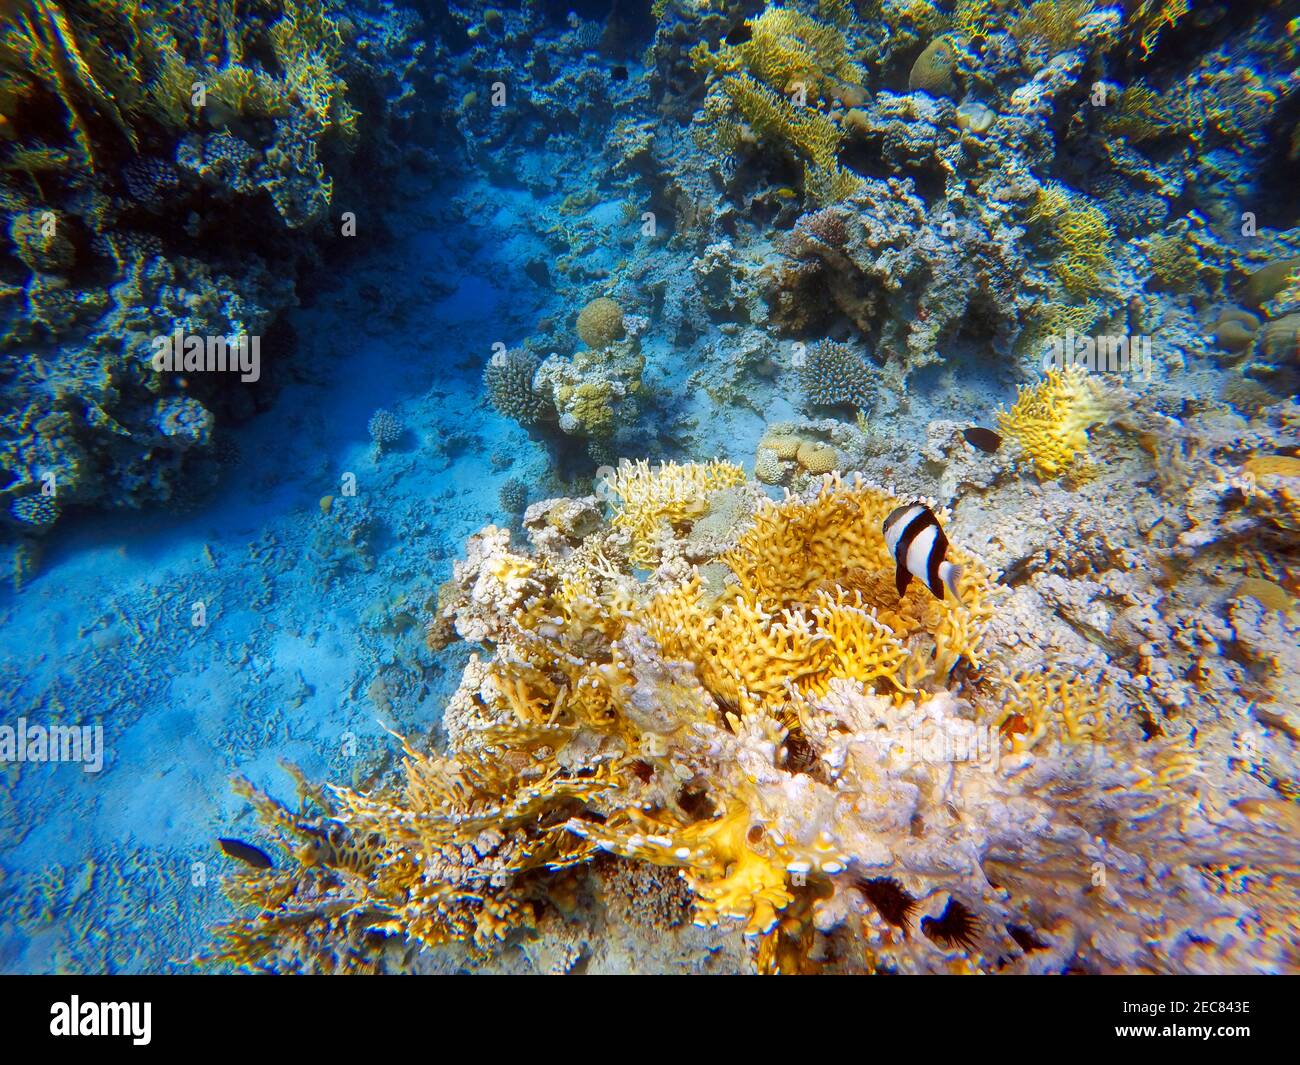 Coralli veduto fare russare nelle acque del Golfo di Aqaba in Giordania. Aqaba offre eccellenti immersioni con barriere coralline colorate. Aqaba, Mar Rosso, Giordania. Foto Stock